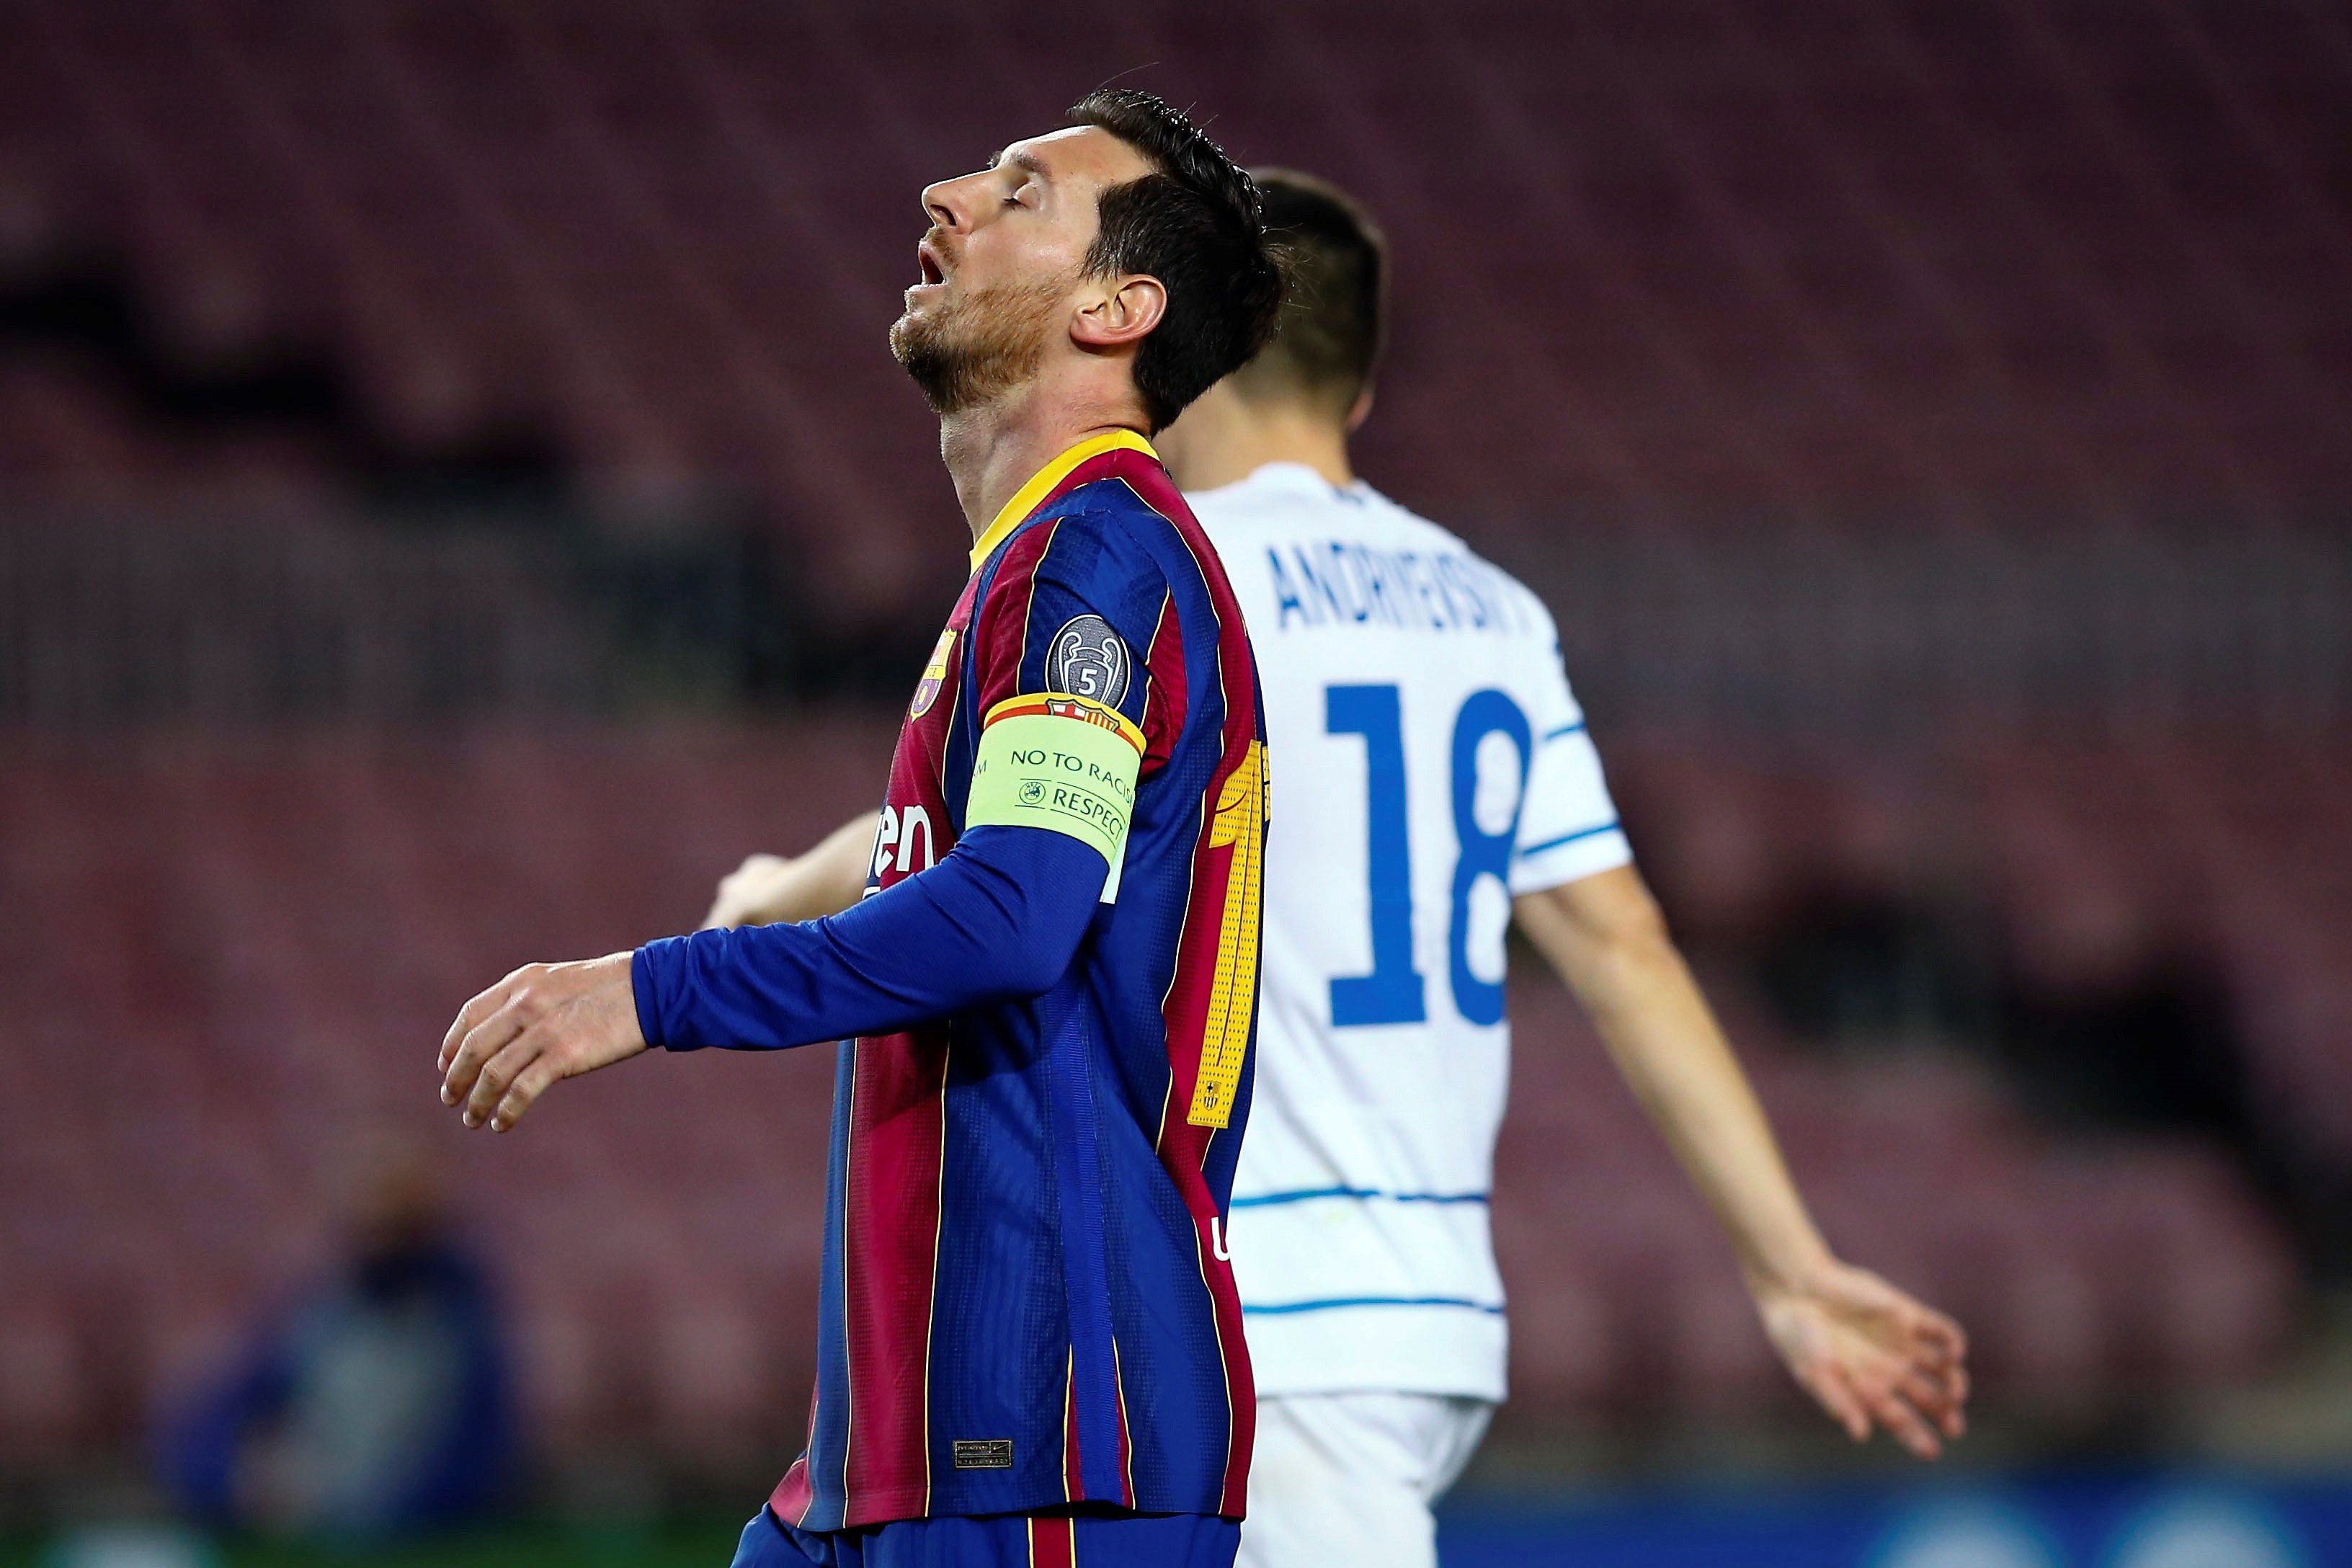 Messi caminant a la Champions: la imatge que indigna a les xarxes